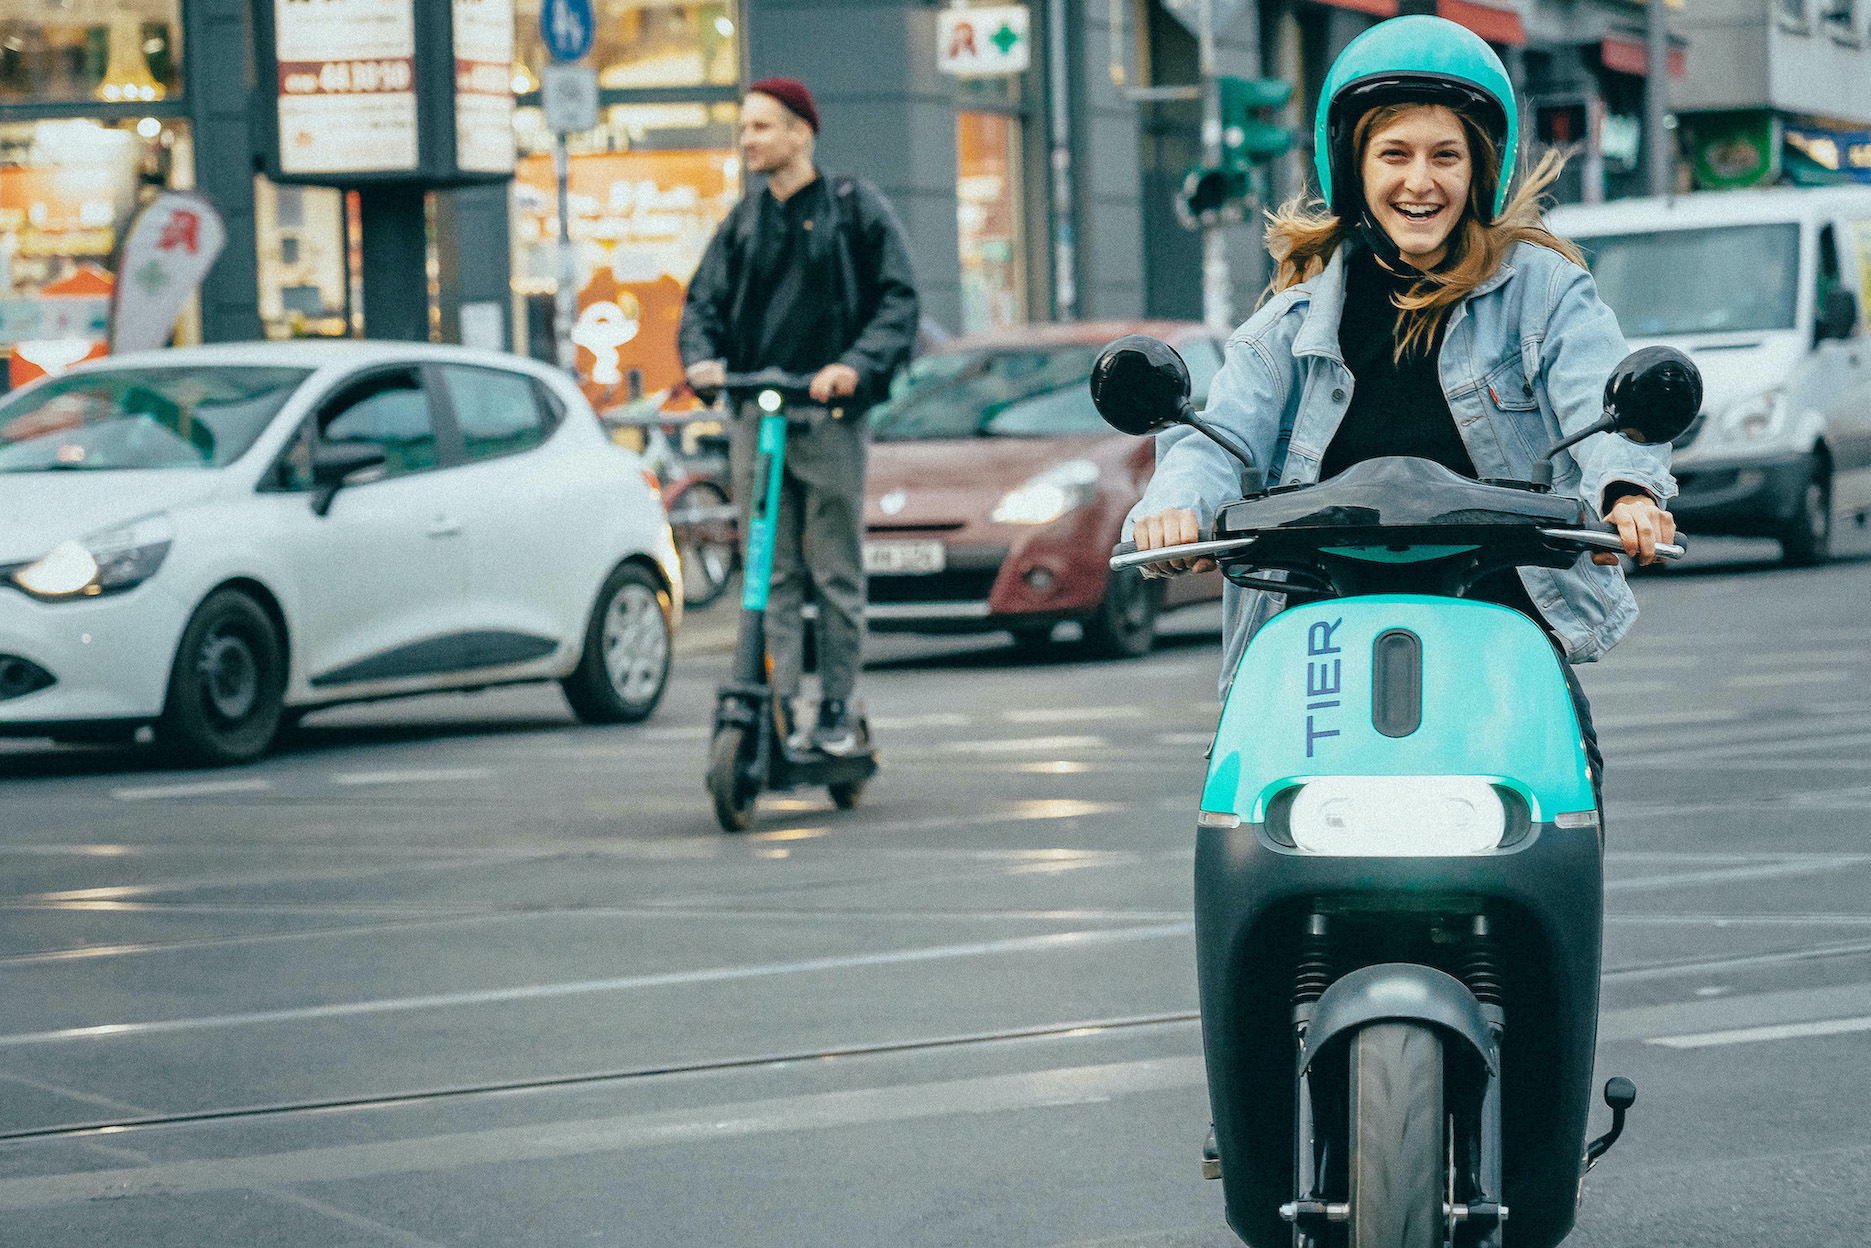 Schon lange bietet Tier per App E-Scooter zum Verleih an. In einer deutschen Stadt kommen ab sofort auch E-Mopeds dazu. Credit: Tier